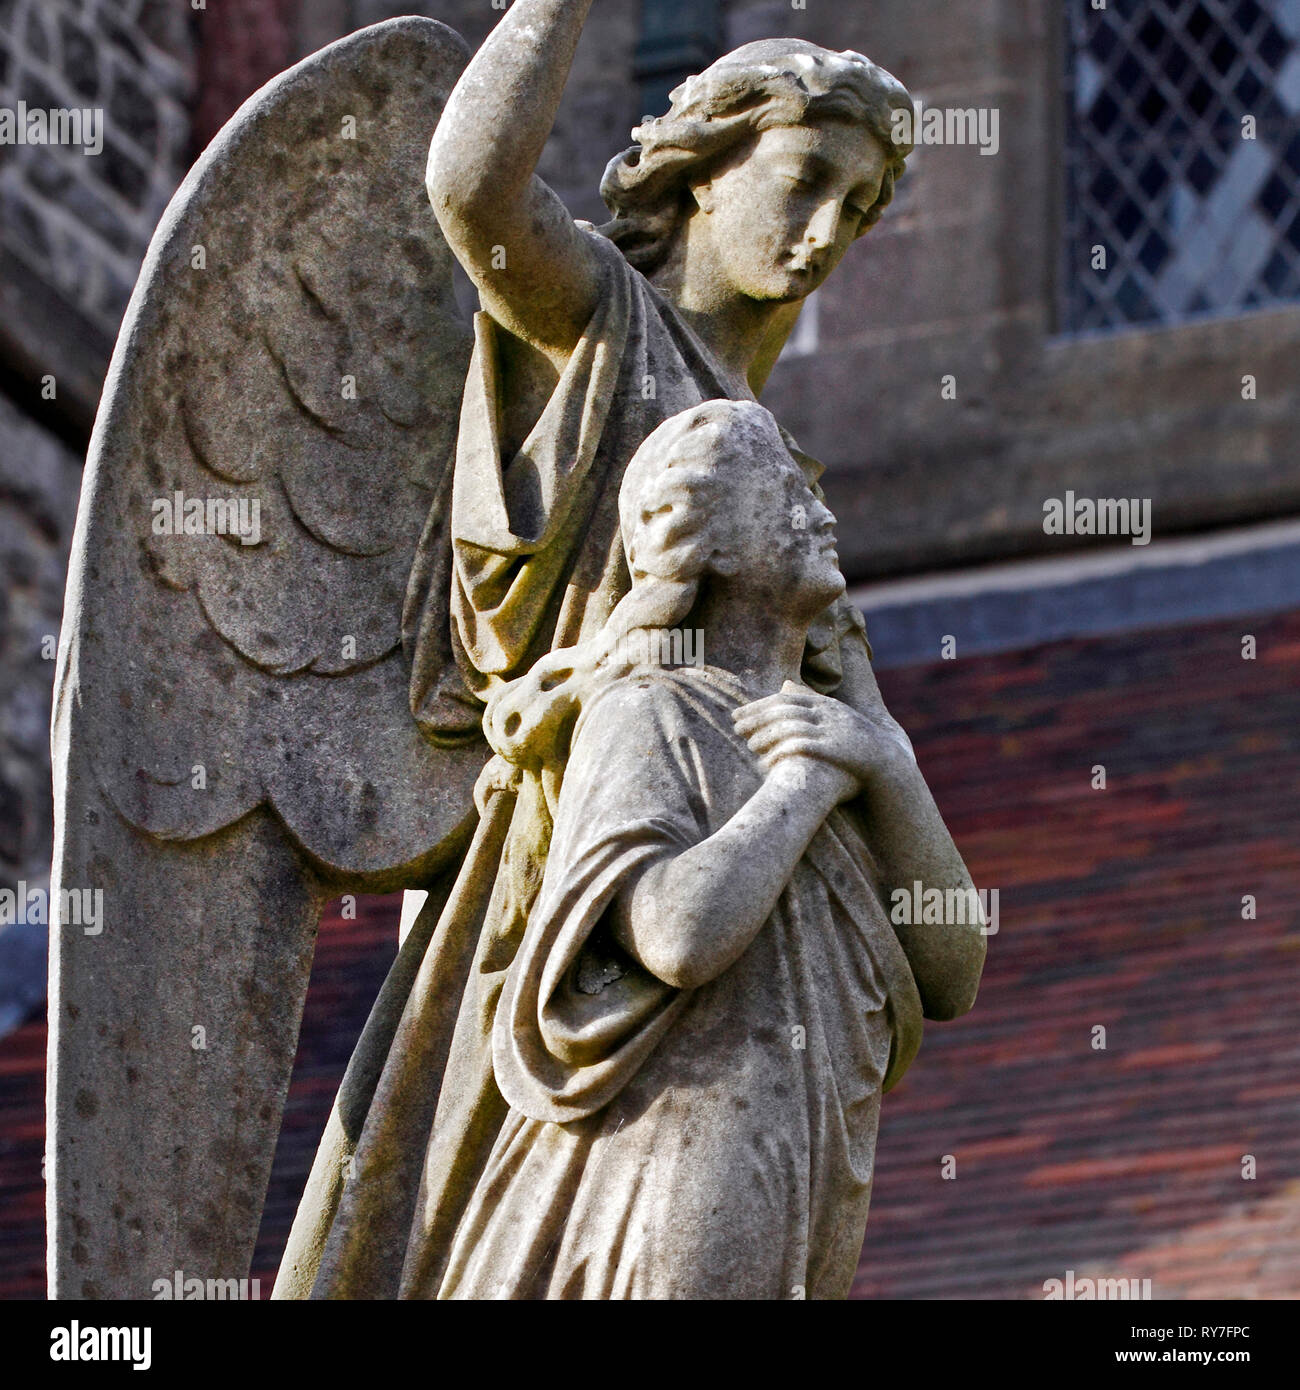 Angelo statua protegge oltre una donna nella vita ultraterrena. Grave memorial, Foto Stock